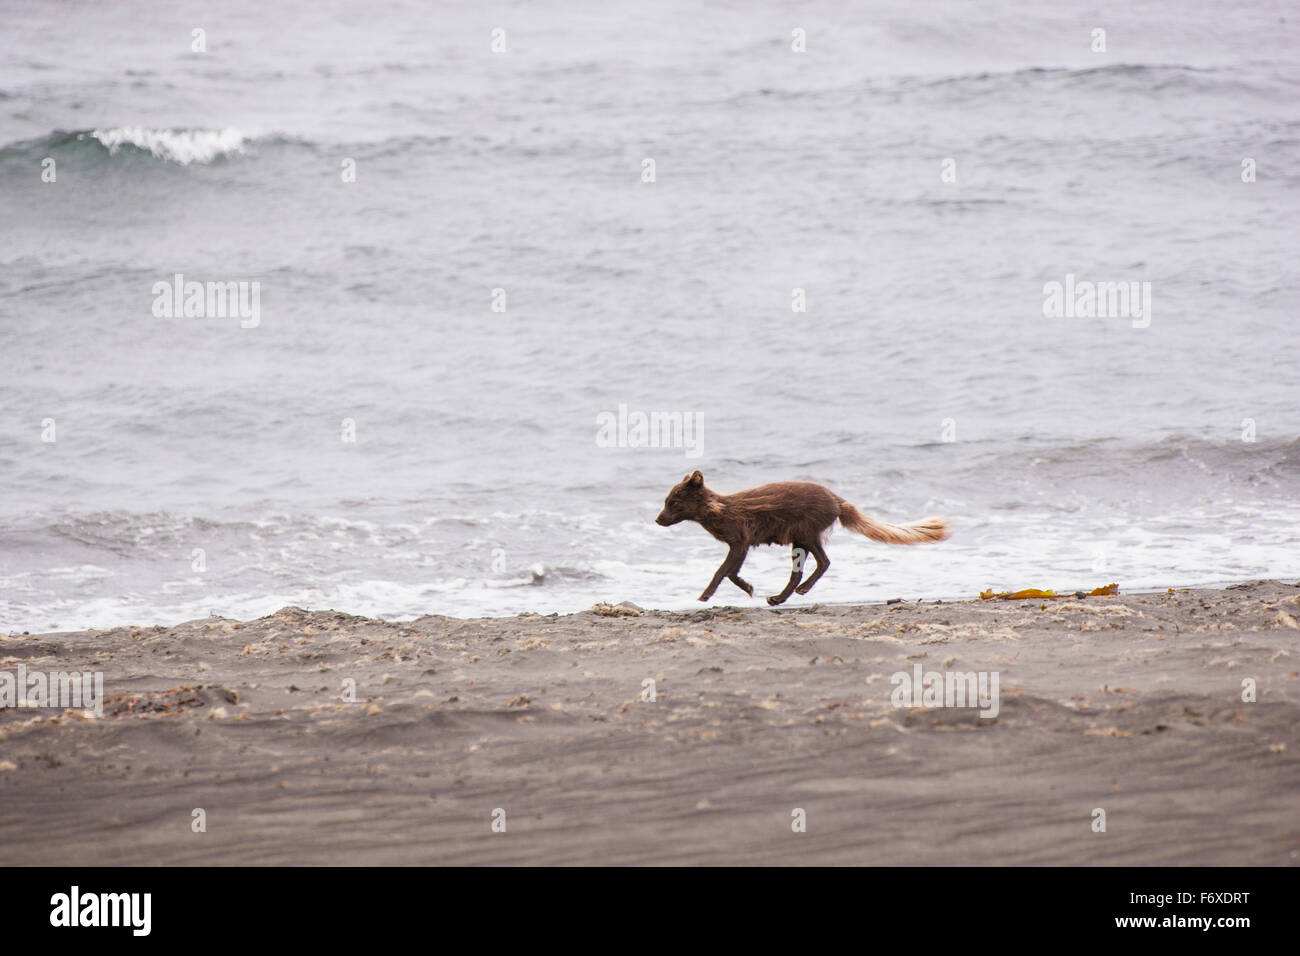 Un zorro ártico que corre a lo largo de la costa de la isla de San Pablo con el Mar de Bering, en el fondo, la isla de San Pablo, al suroeste de Alaska, EE.UU., Verano Foto de stock